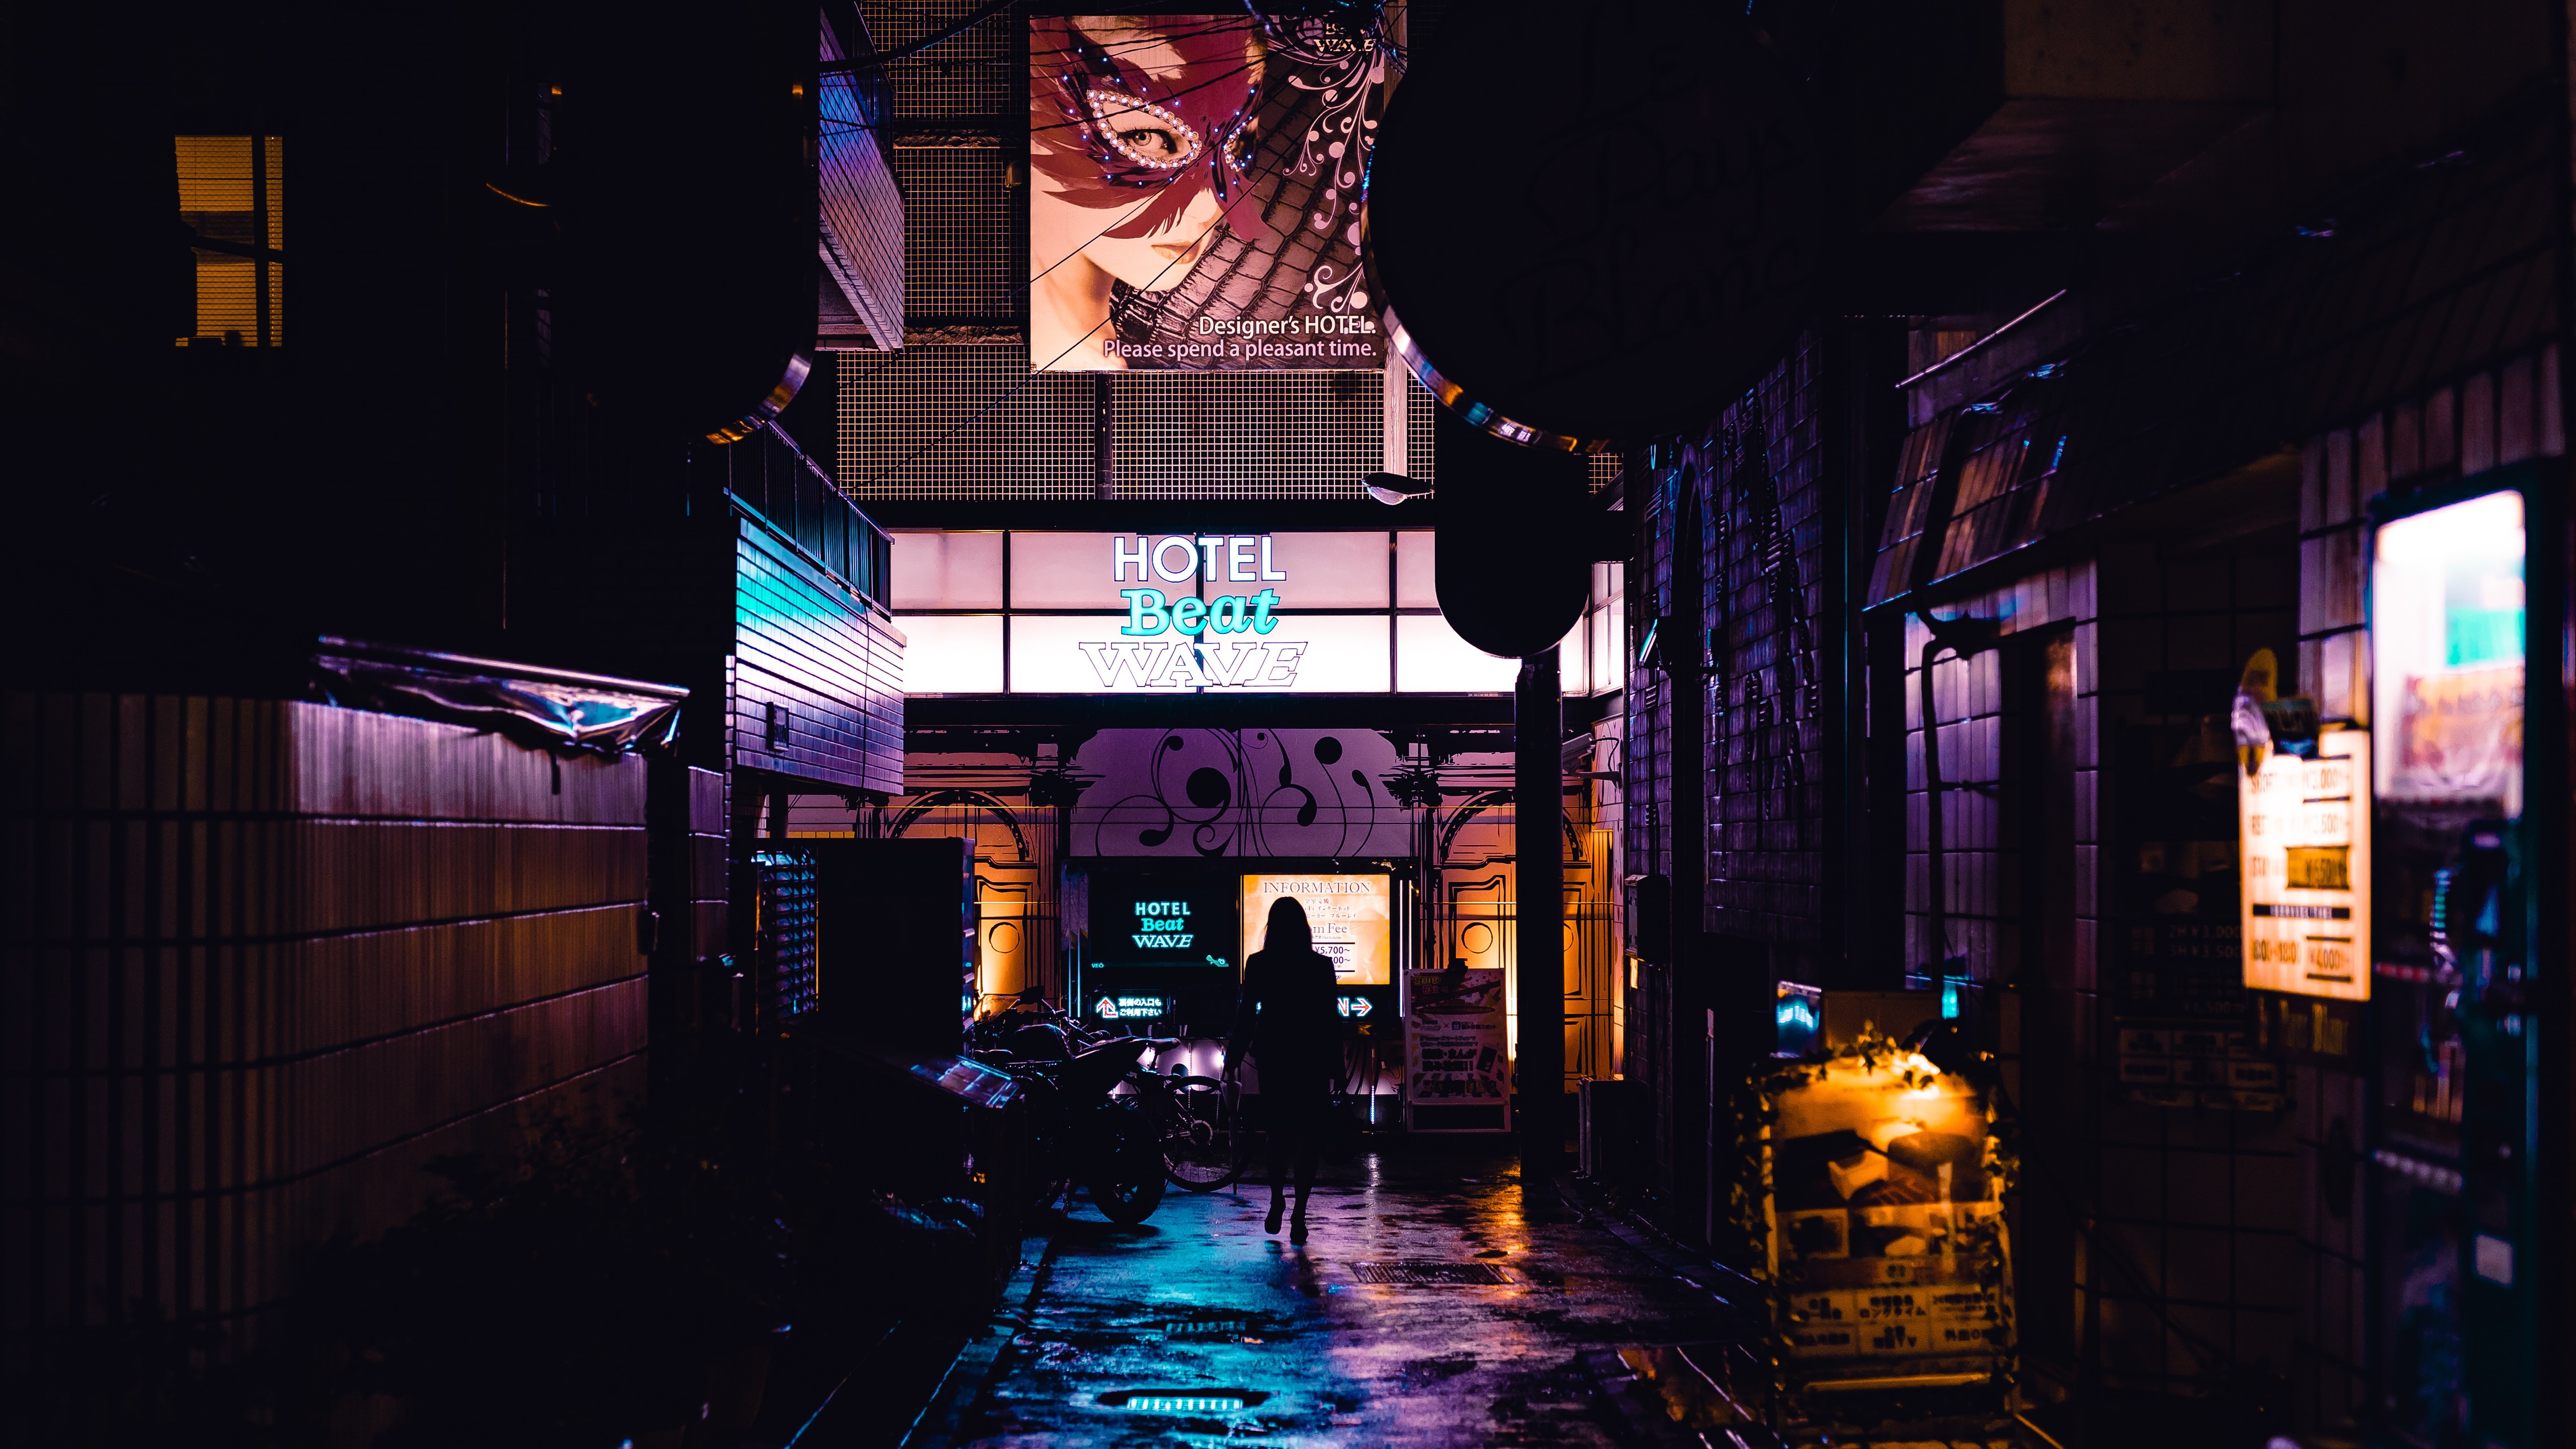 Japan Night Street - 5120x2880 Wallpaper 